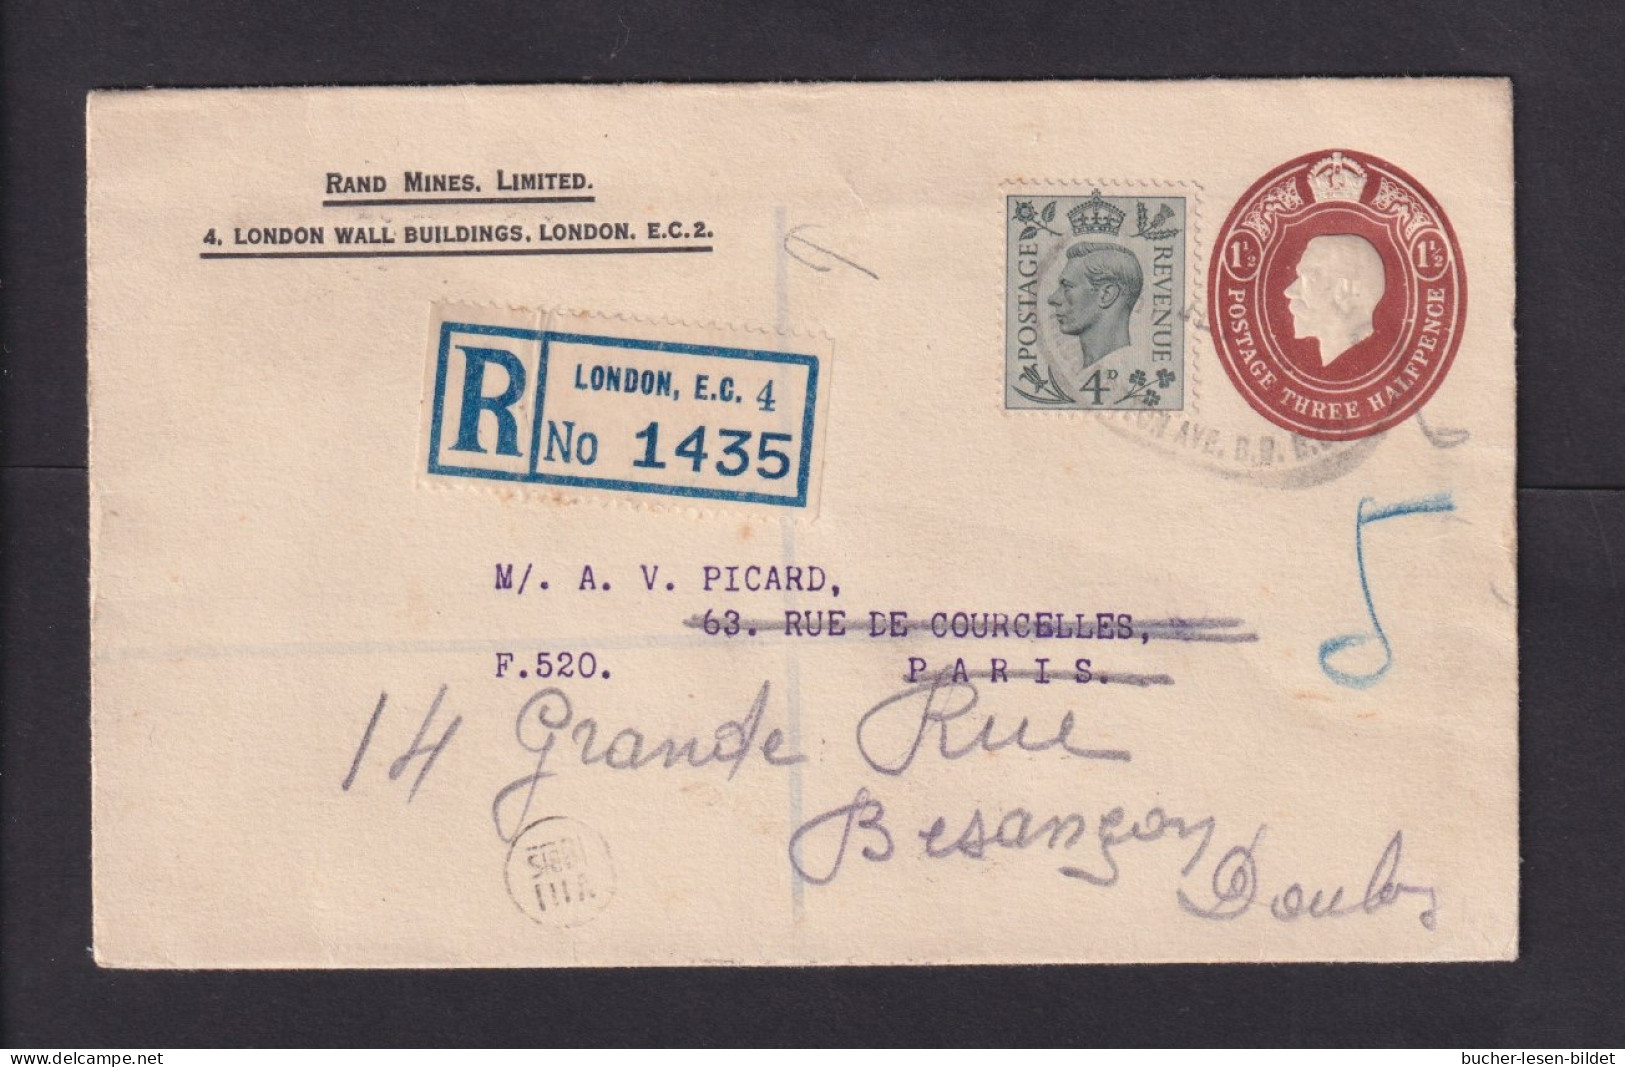 1939 - 1 1/2 P. Privat-Ganzsache Als Einschreiben Ab London Nach Frankreich, Dort Nachgesandt - Storia Postale